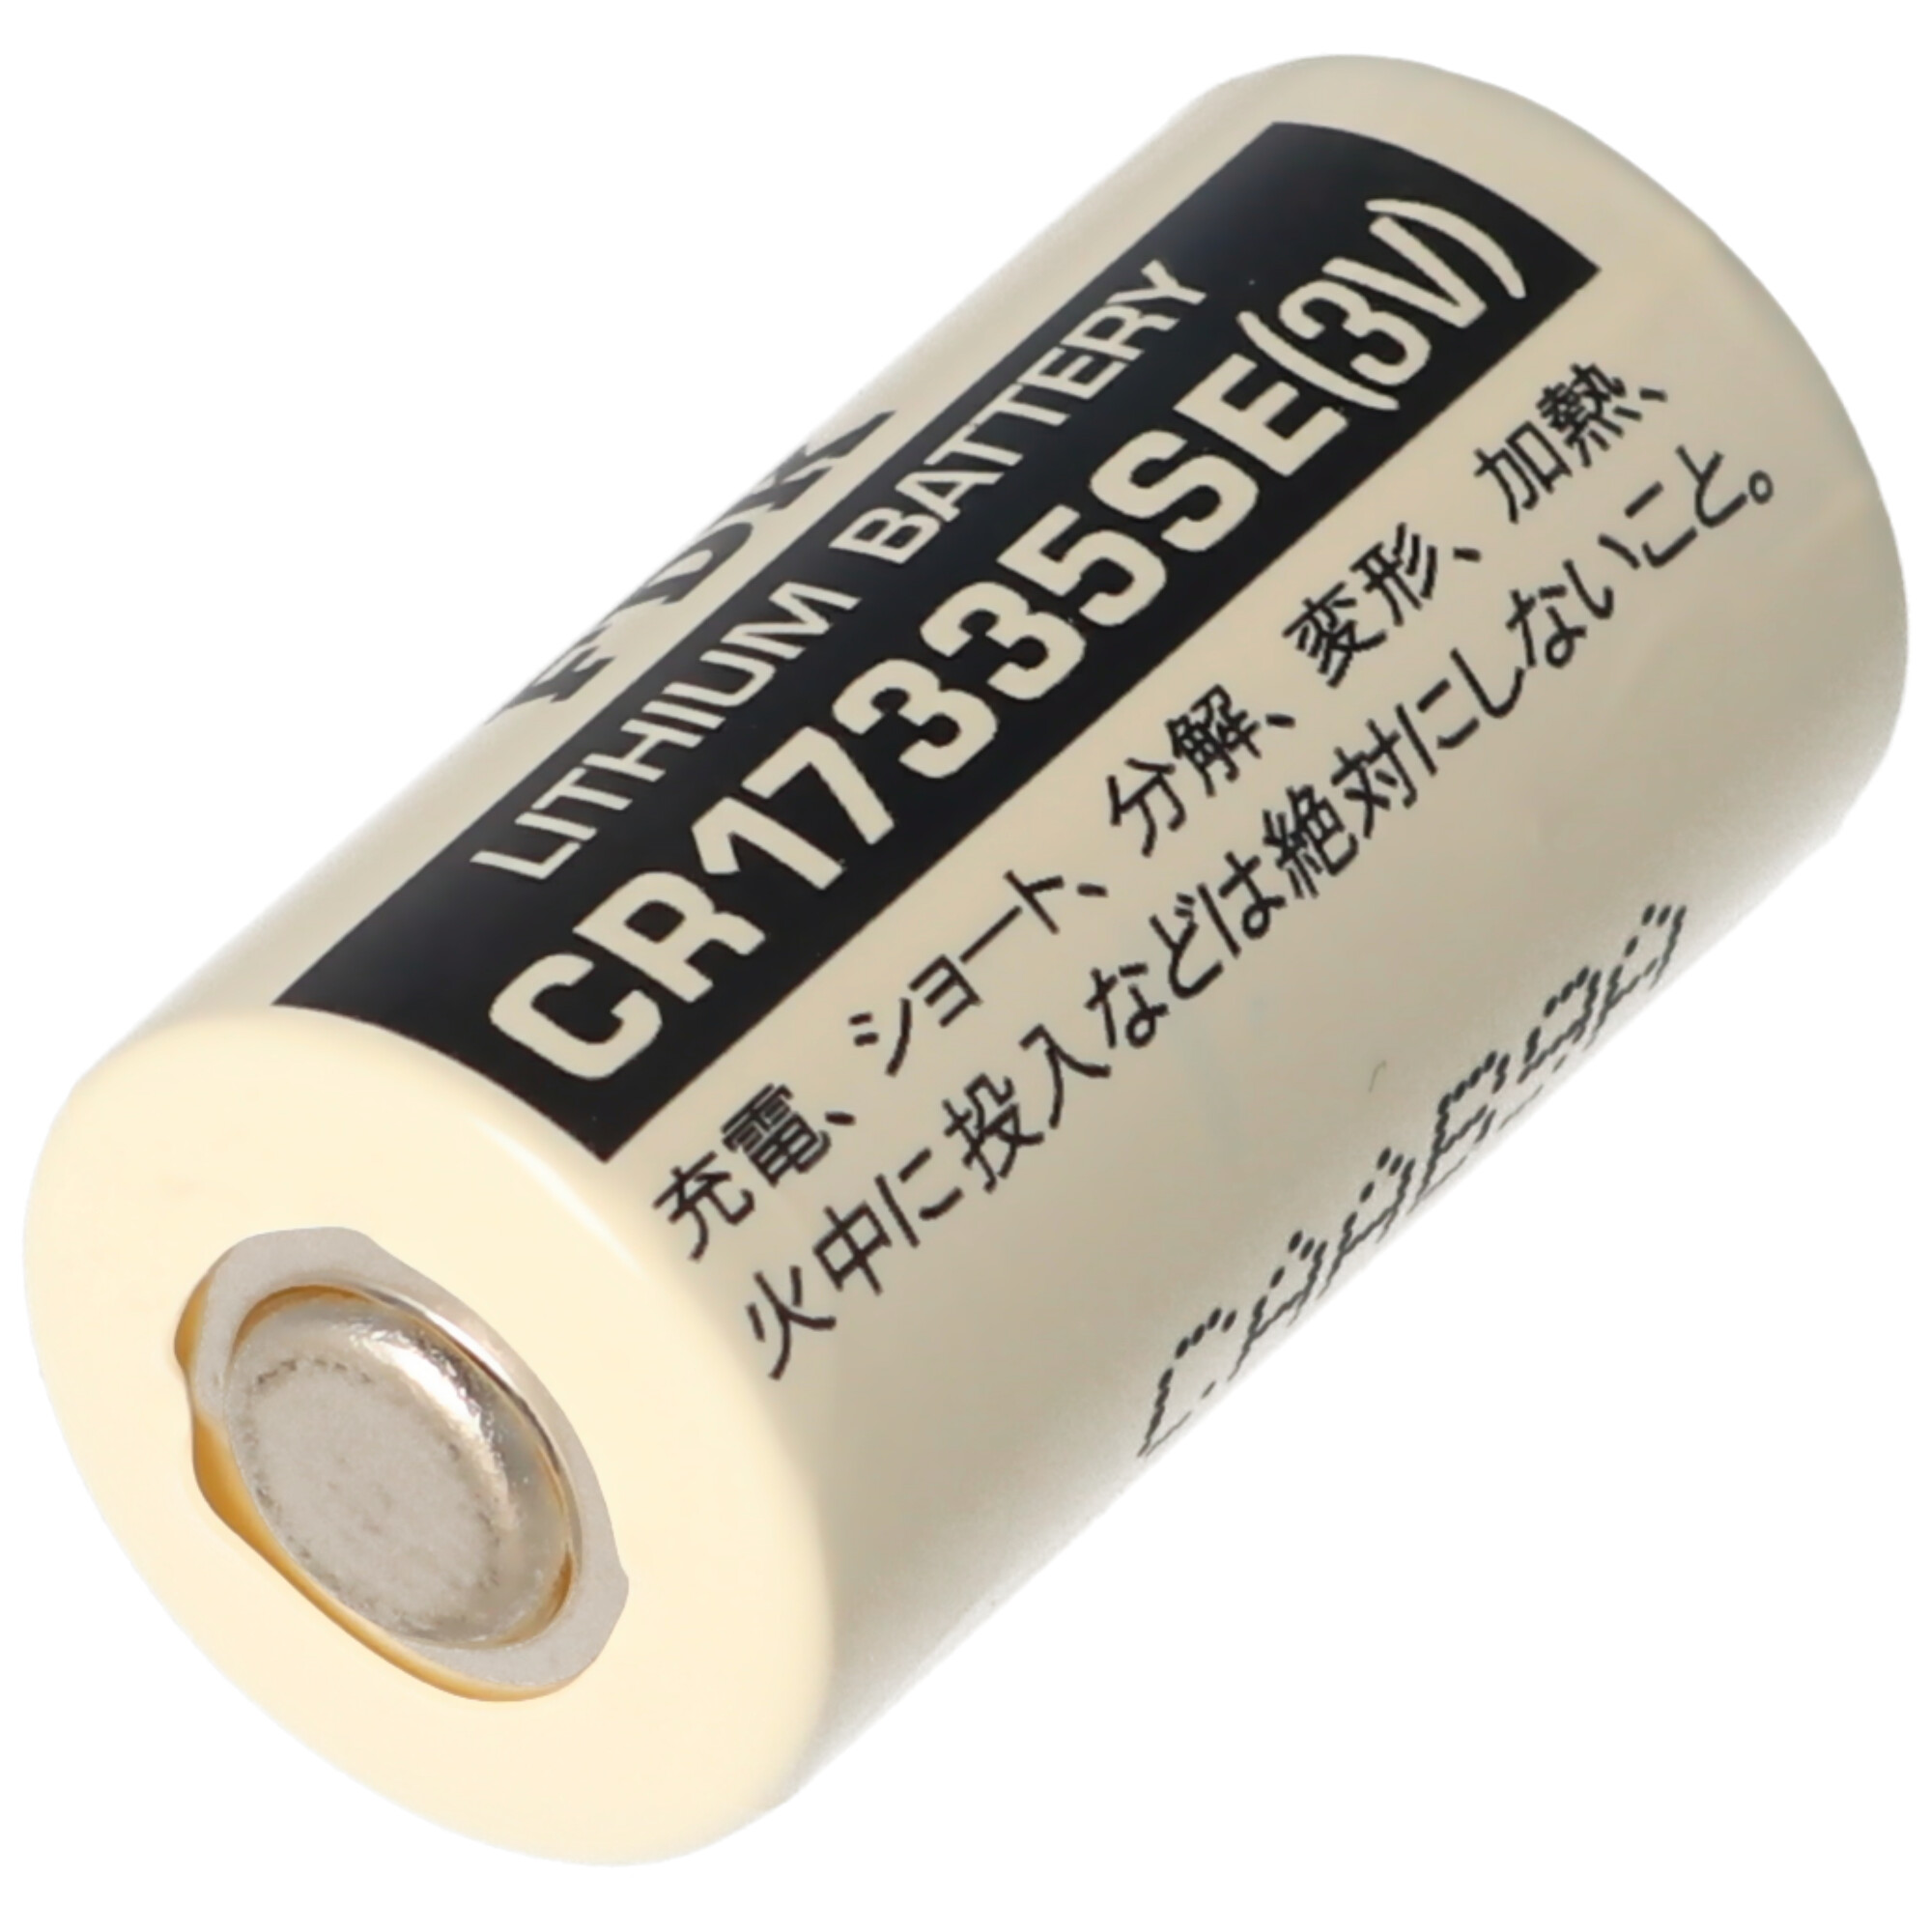 Sanyo Lithium Batterie CR17335 SE Size 2/3A, ohne Lötfahnen CR17335SE